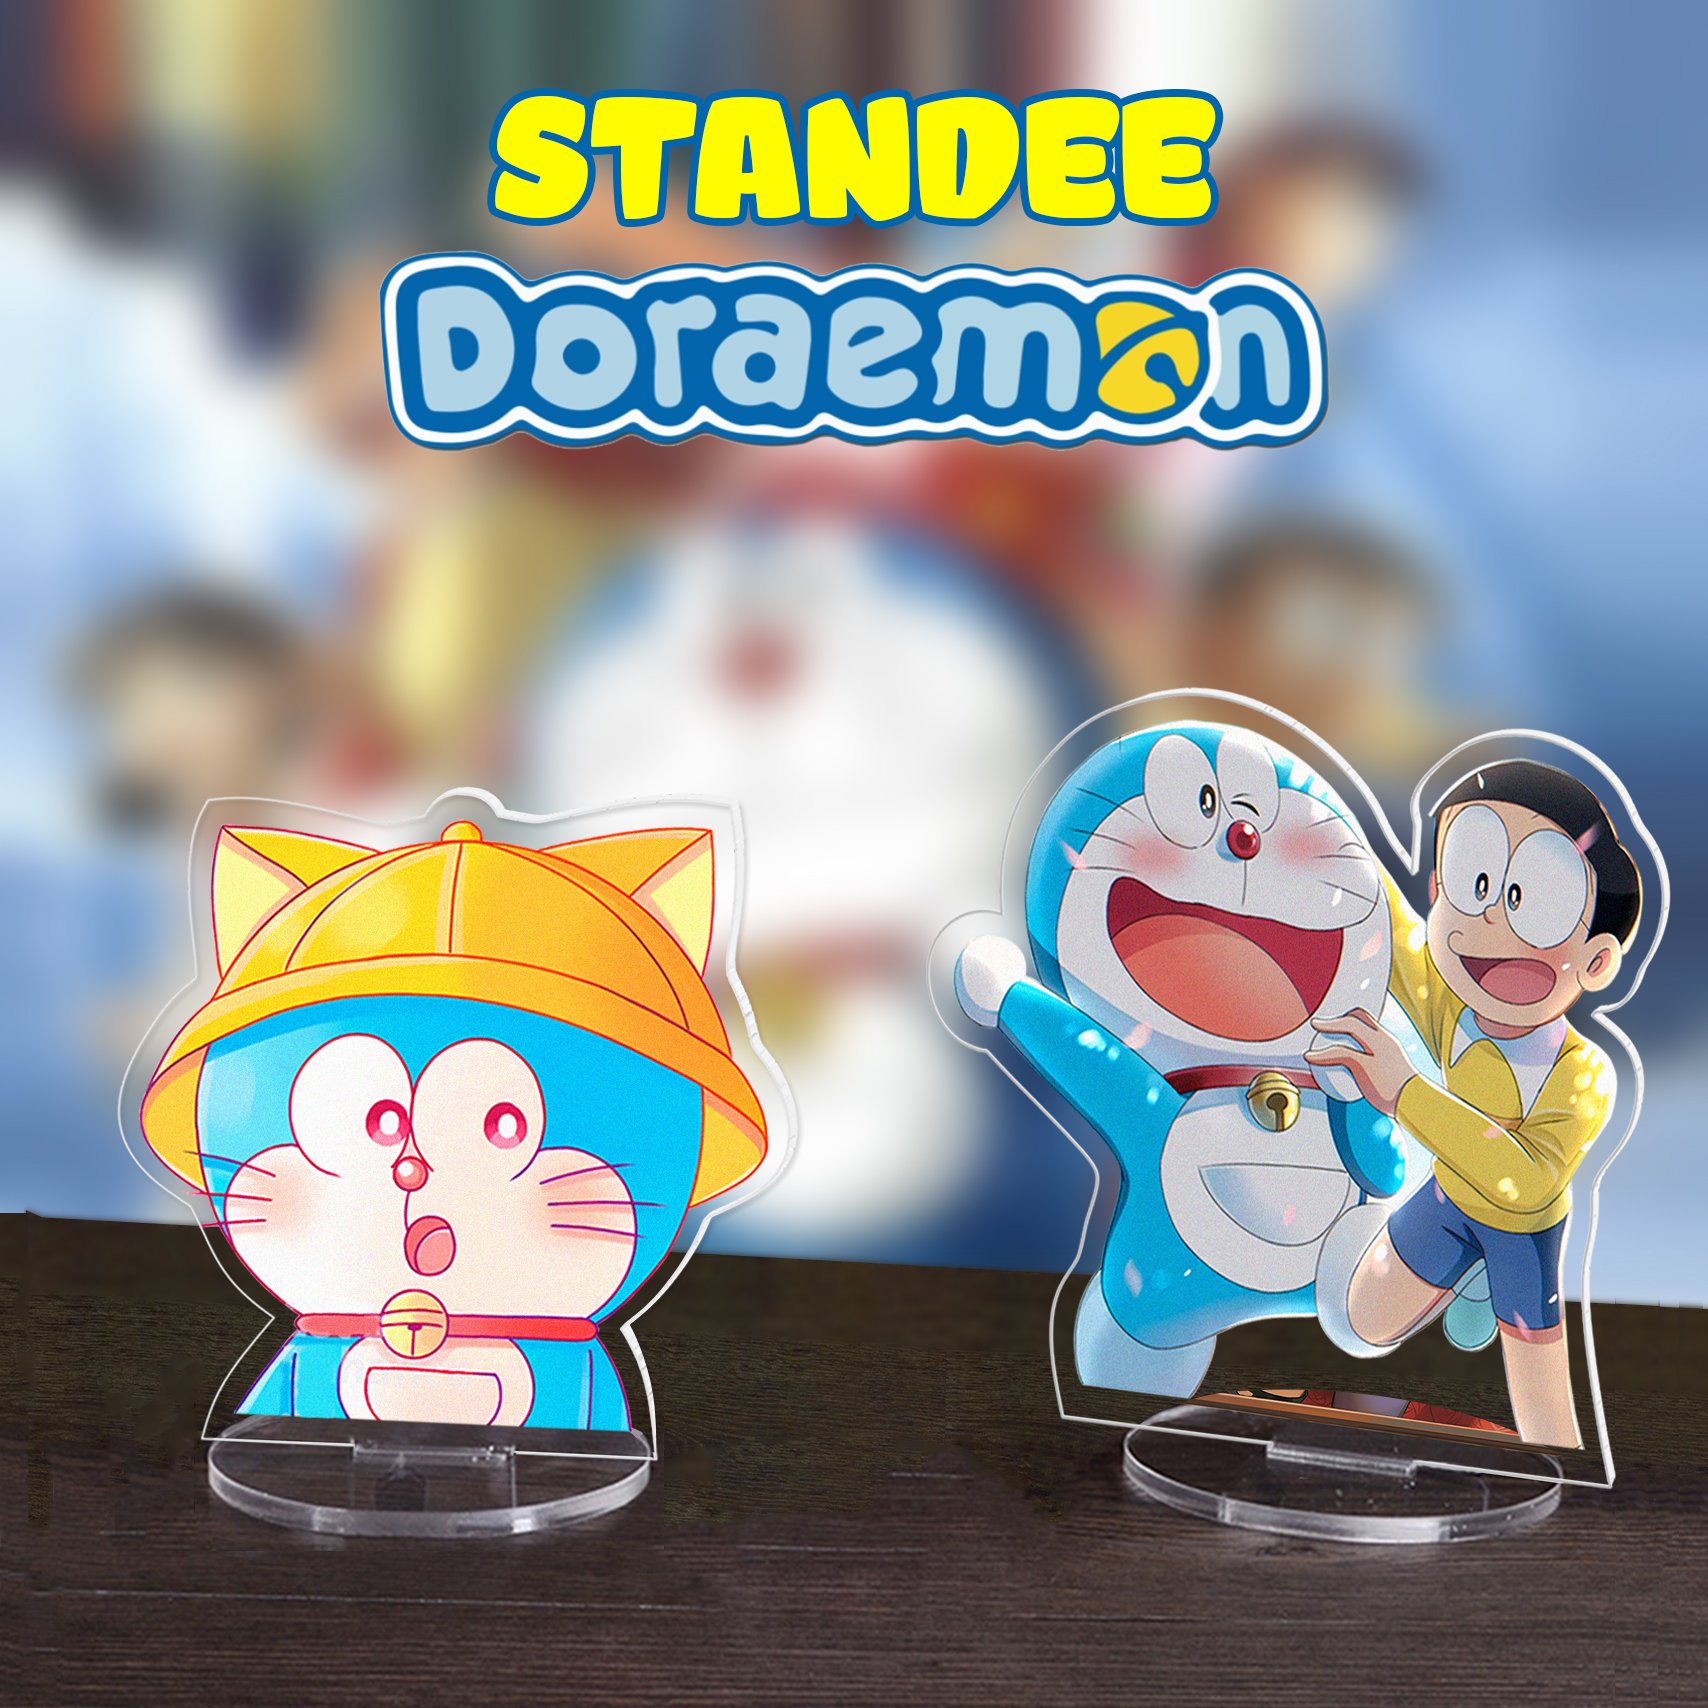 Doraemon Mô Hình cute sẽ khiến bạn ngất ngây với thiết kế tinh xảo và sống động. Đây là một trong những sản phẩm hot nhất hiện nay dành cho các fan của Doremon. Hãy đến xem để nhận được nhiều bất ngờ hơn nữa từ chú mèo máy dễ thương này.